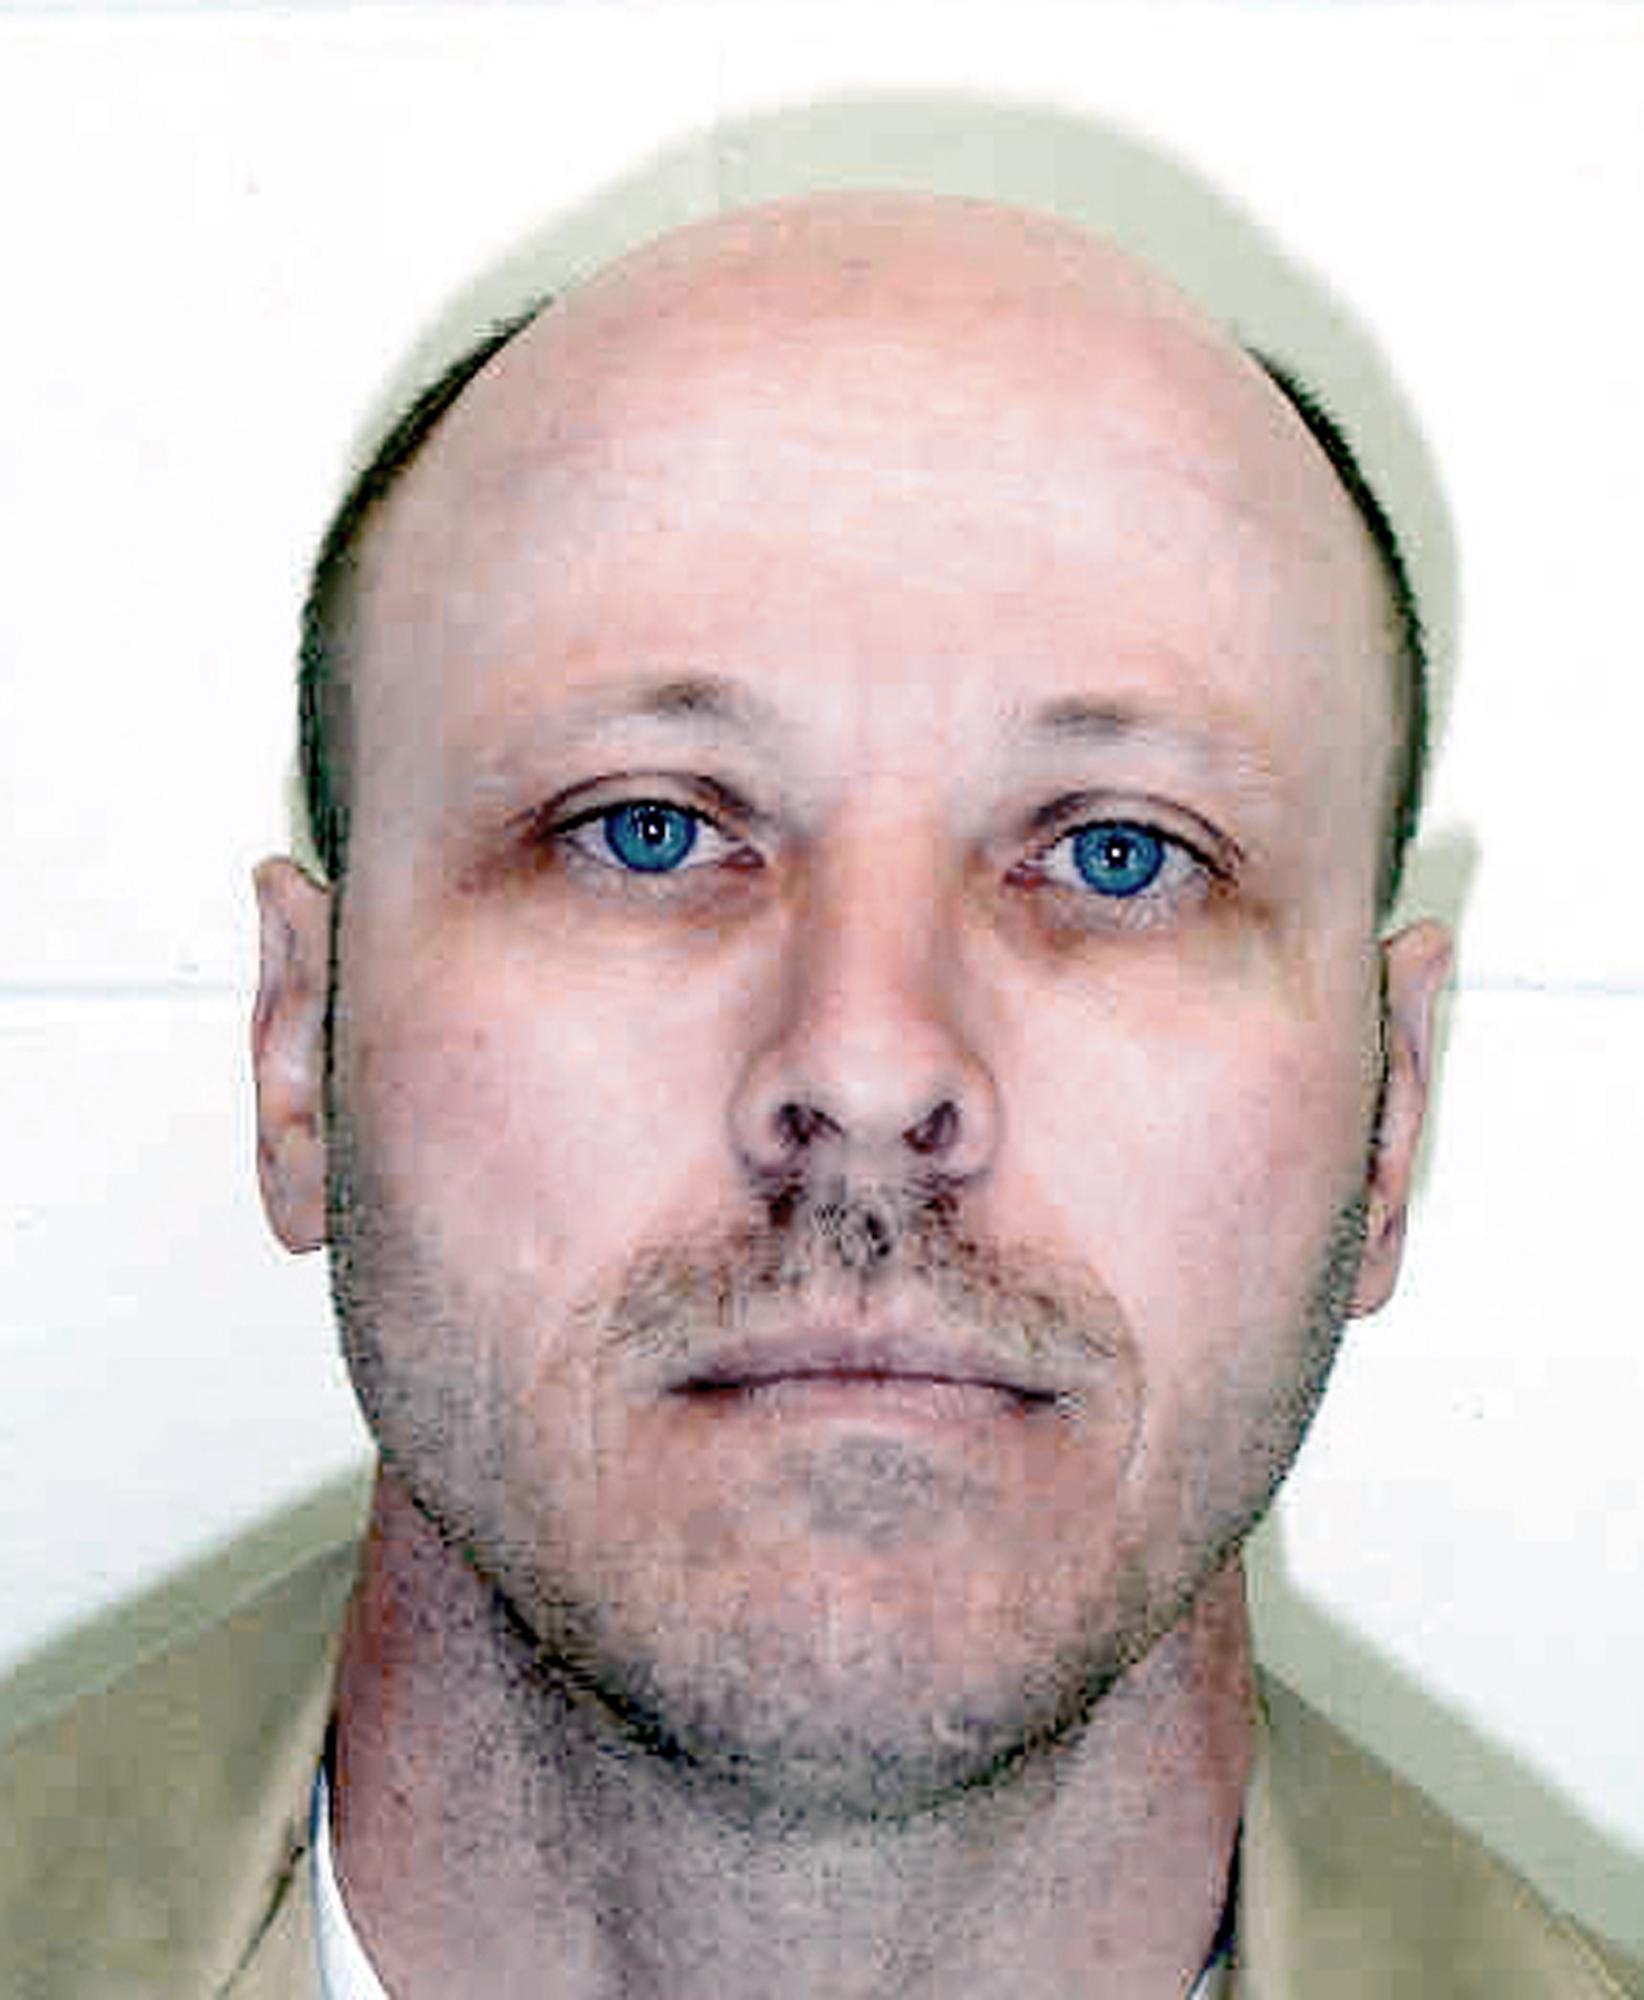 Carey Dean Moore skulle avrättas med avrättningsmetod som inte tidigare använts i Nebraska. Men det blev aldrig av och nu får han livstids fängelse.